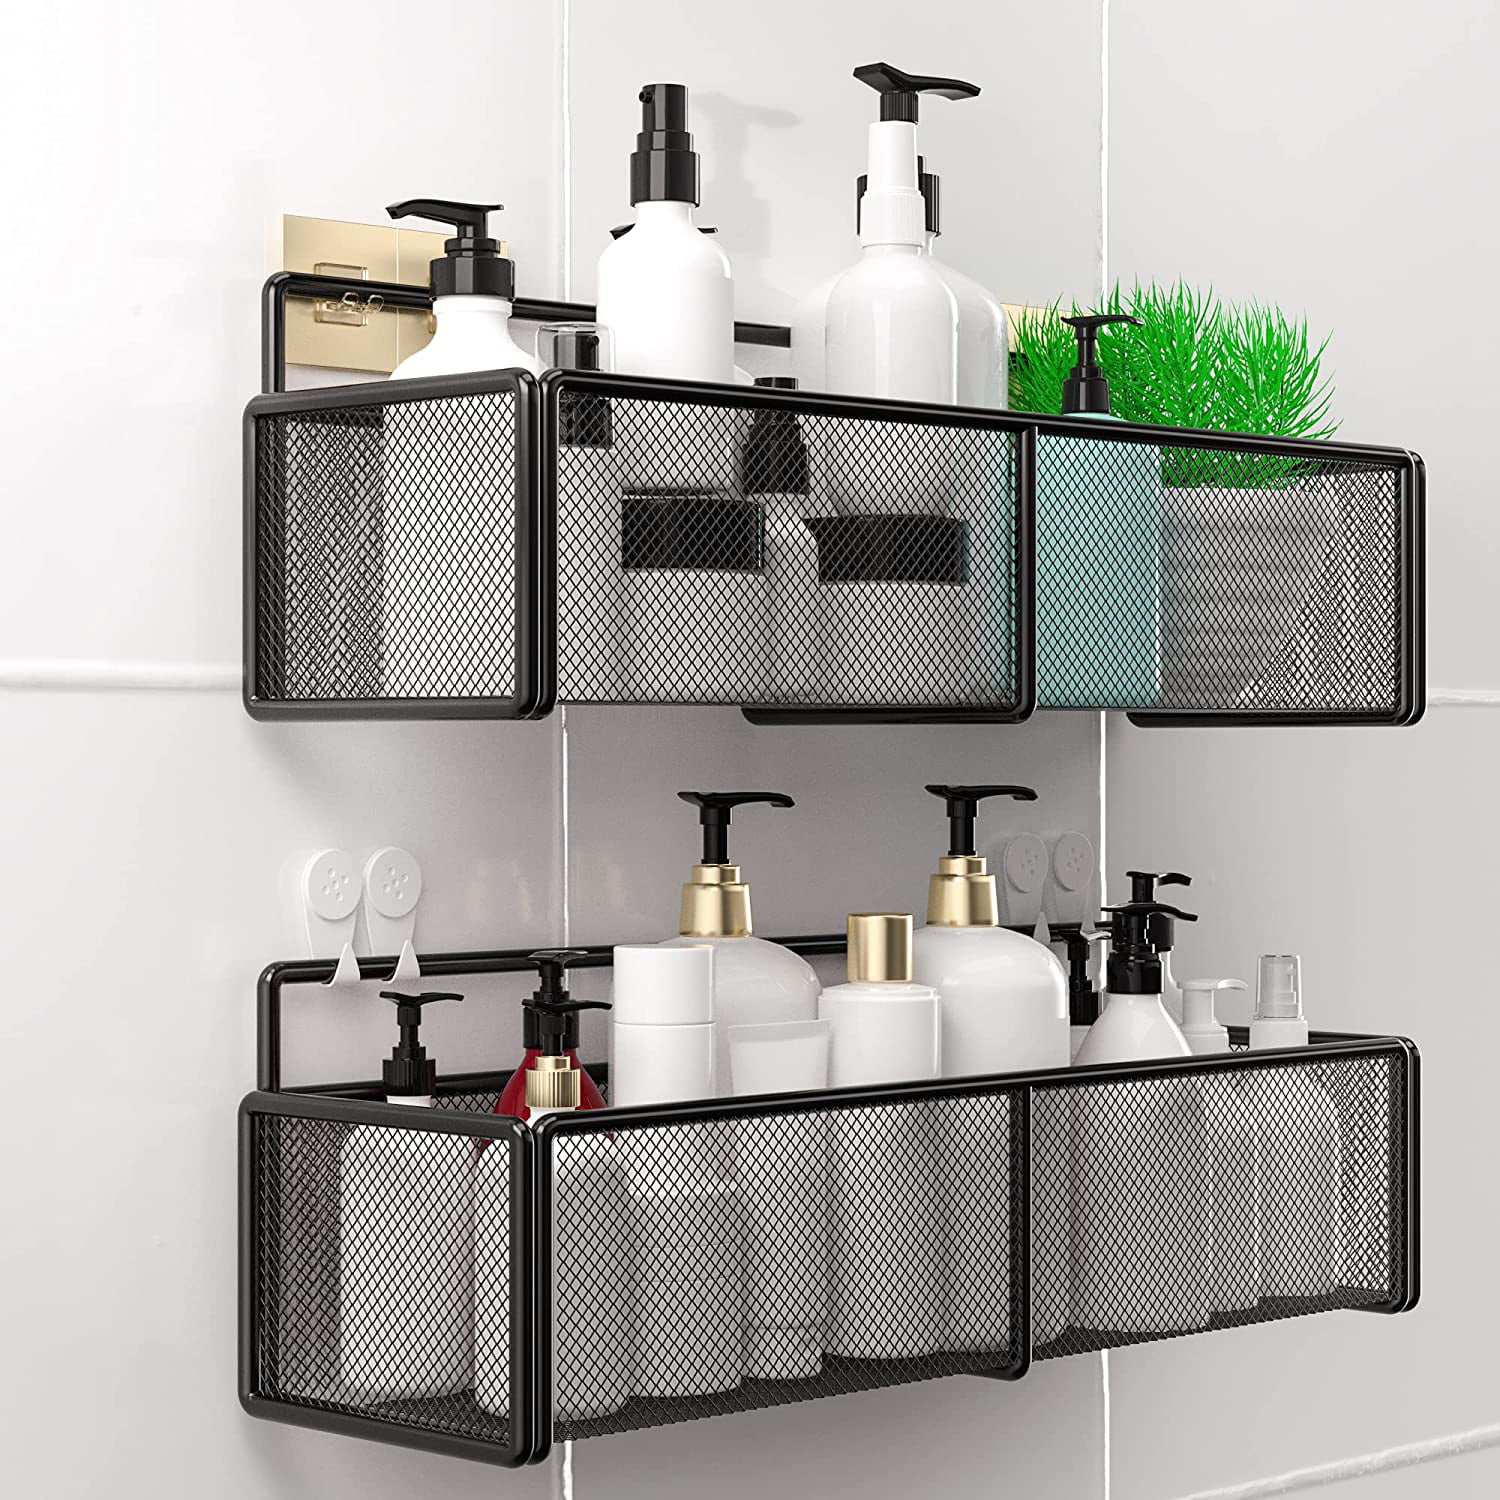 Self-adhesive Storage Rack Holder Shelf Kitchen Bathroom Shower Organizer Basket 